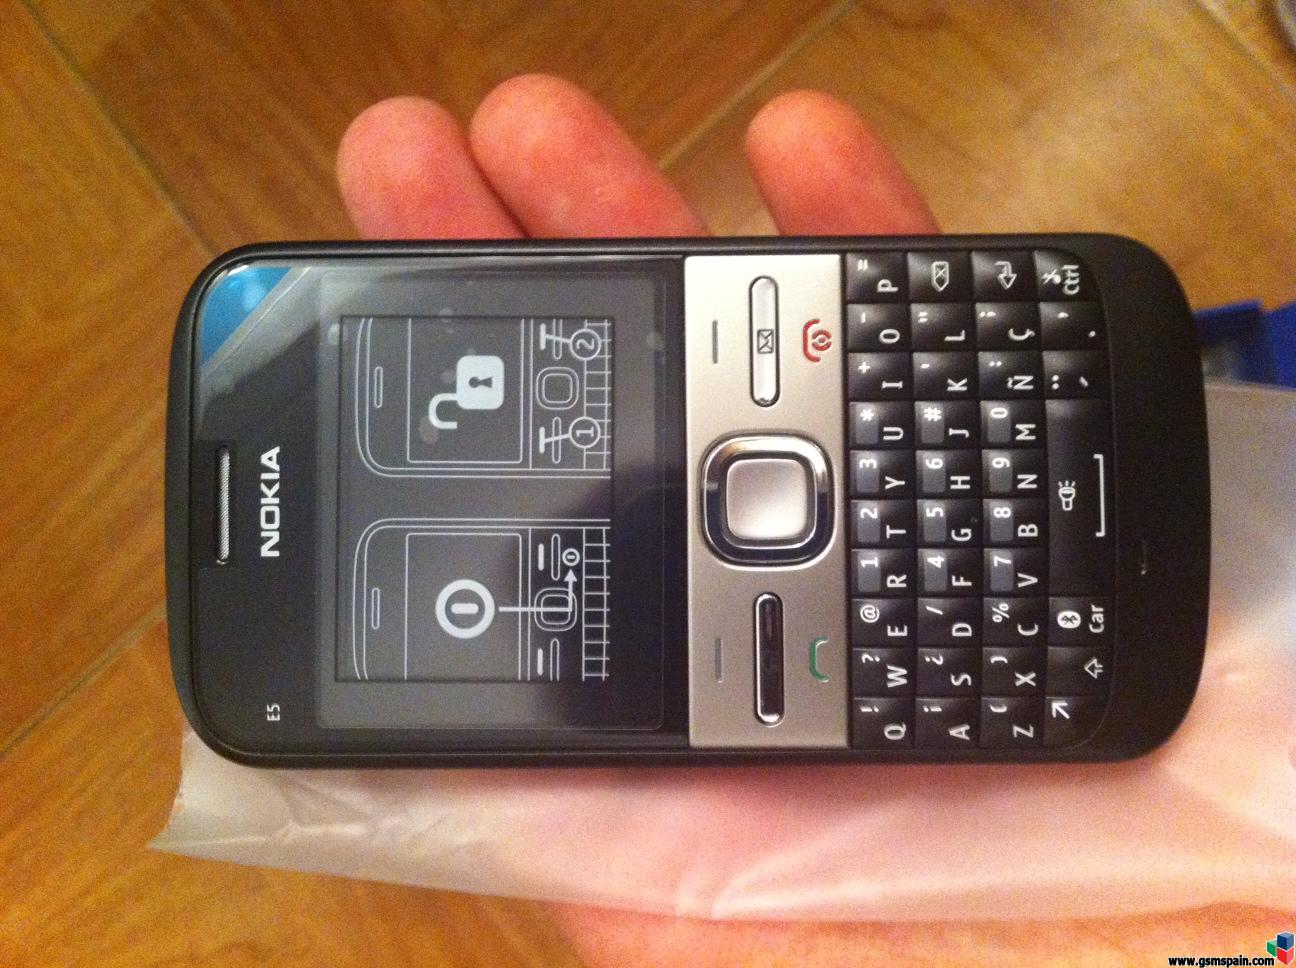 [VENDO] Nokia e5 Vodafone,nuevo,sin estrenar,nunca se ha encendido.GPS,WIFI,5mpx.130 G.I.